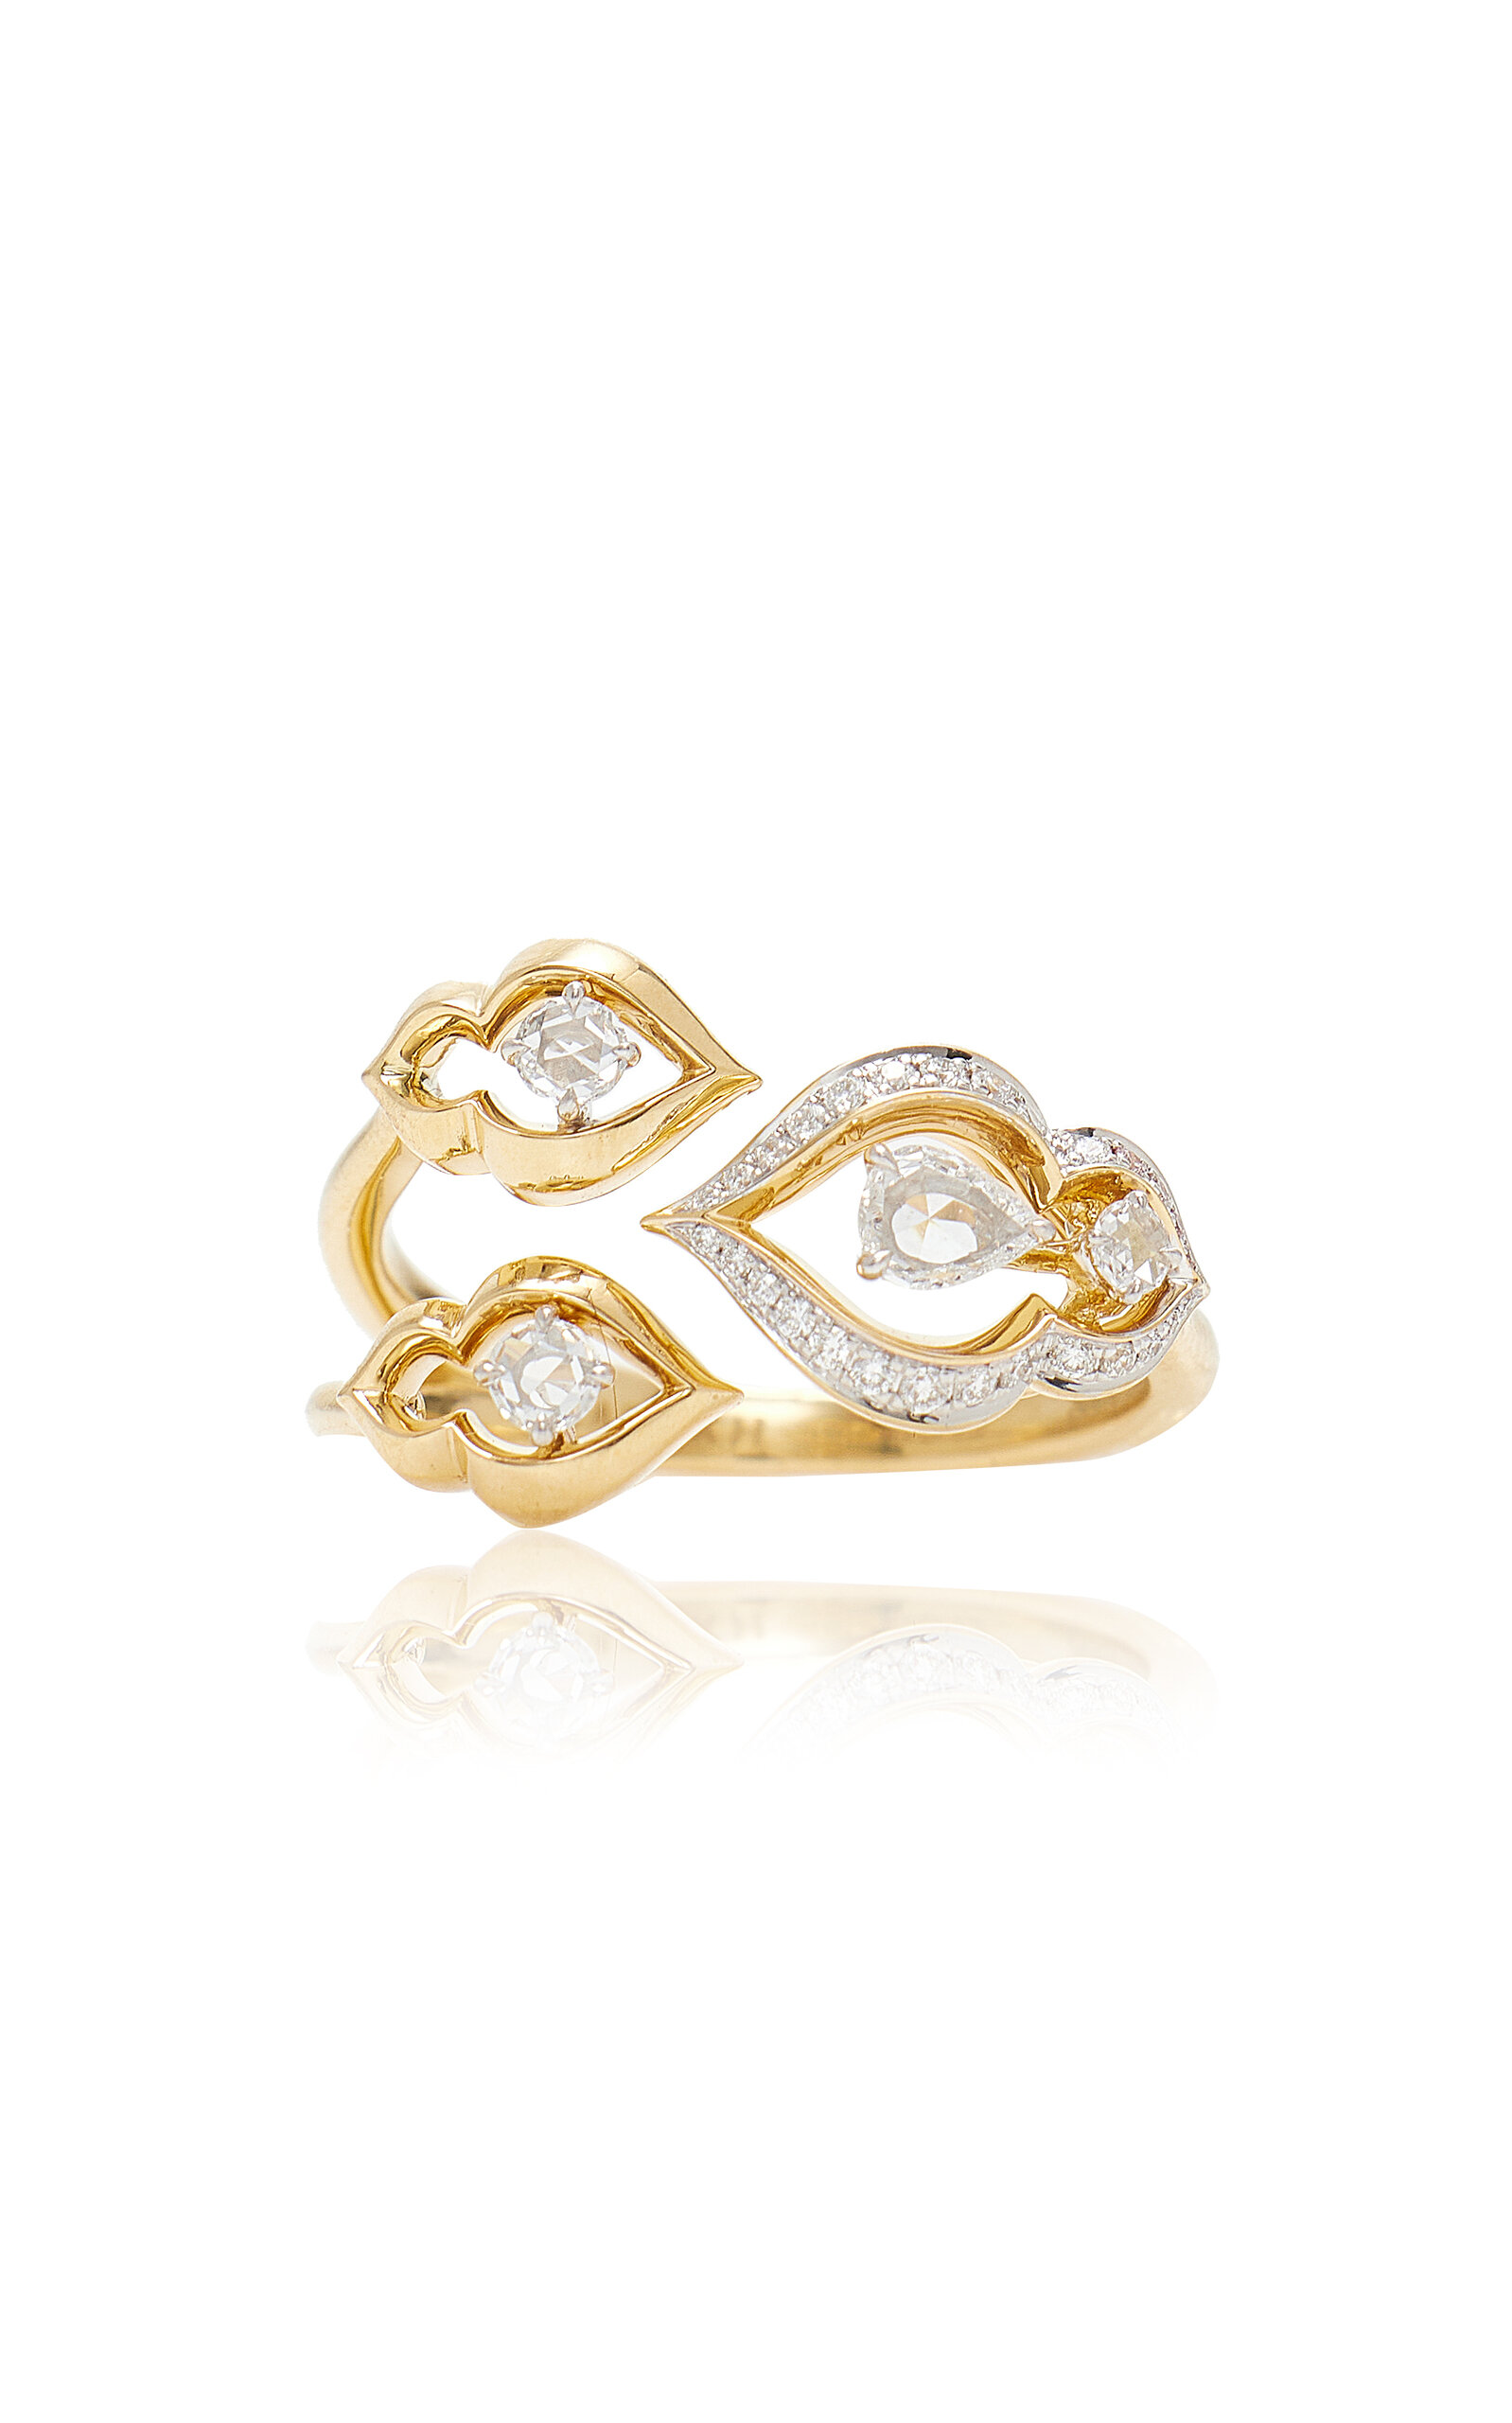 Haveli 18K Yellow Gold Diamond Ring